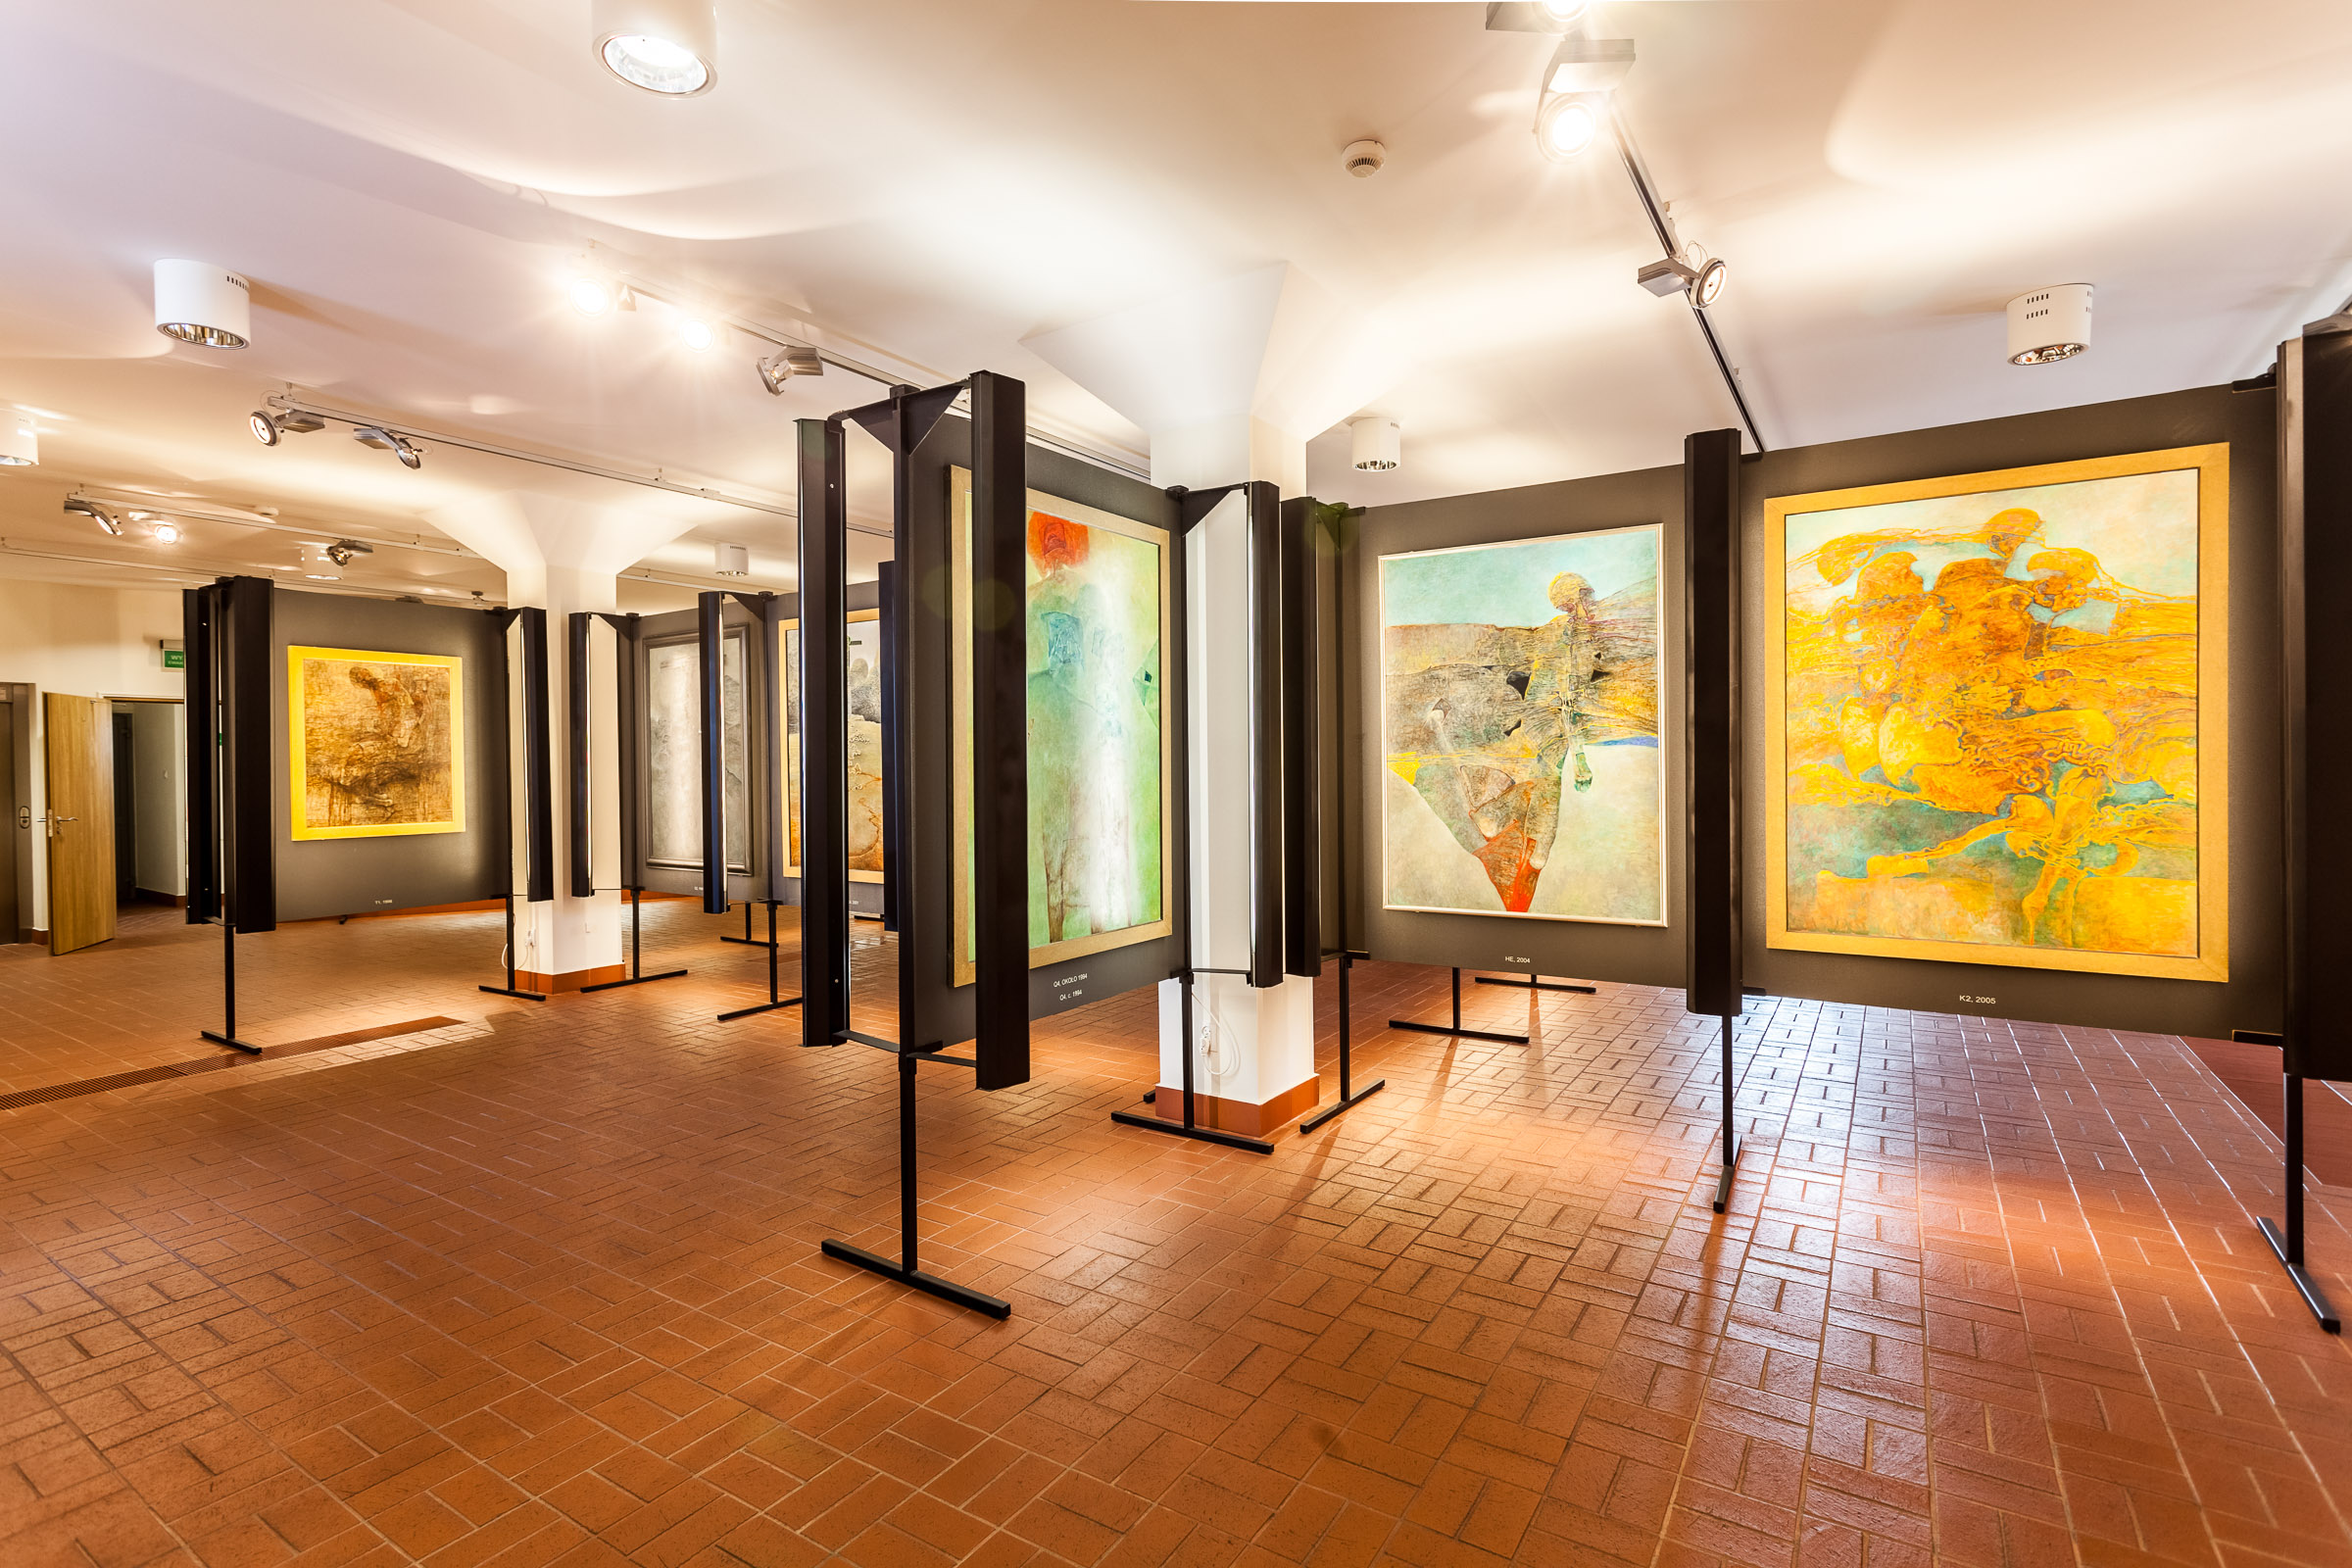 Sala wystawowa. Na ścianach zawieszone obrazy Beksińskiego. W pomieszczaniu jest jasno.